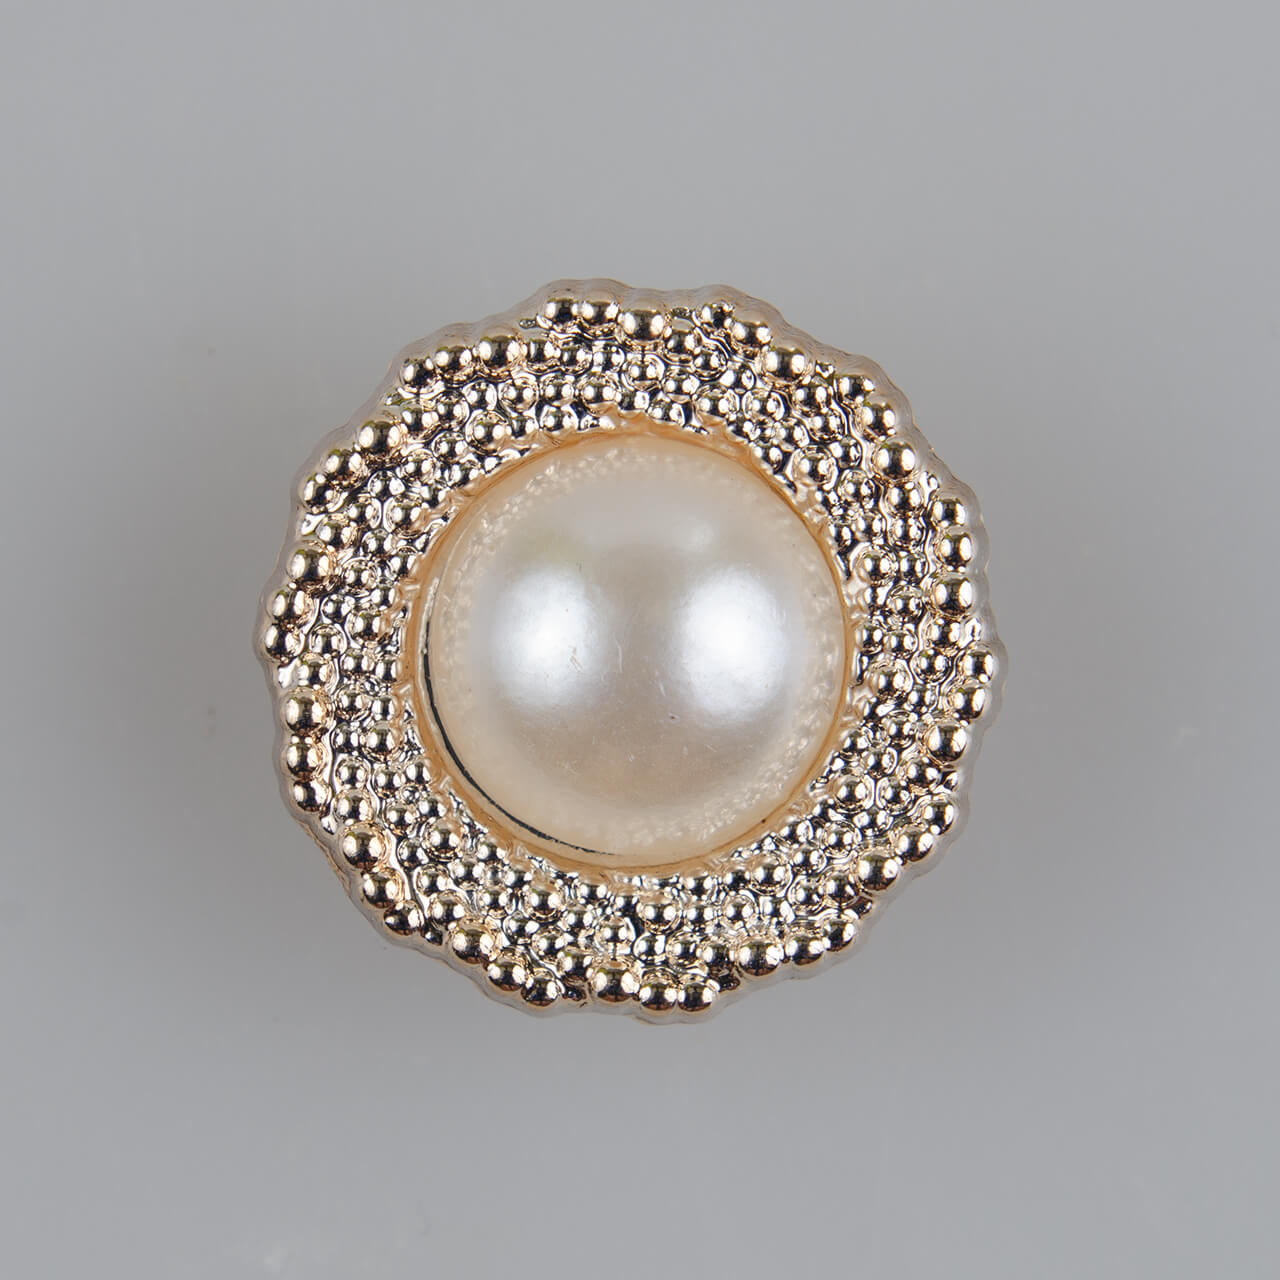 Guzik elegancki z perłą i szerokim rantem, tworzywo sztuczne, śr. 21 mm (34"), kolor jasnozłoty